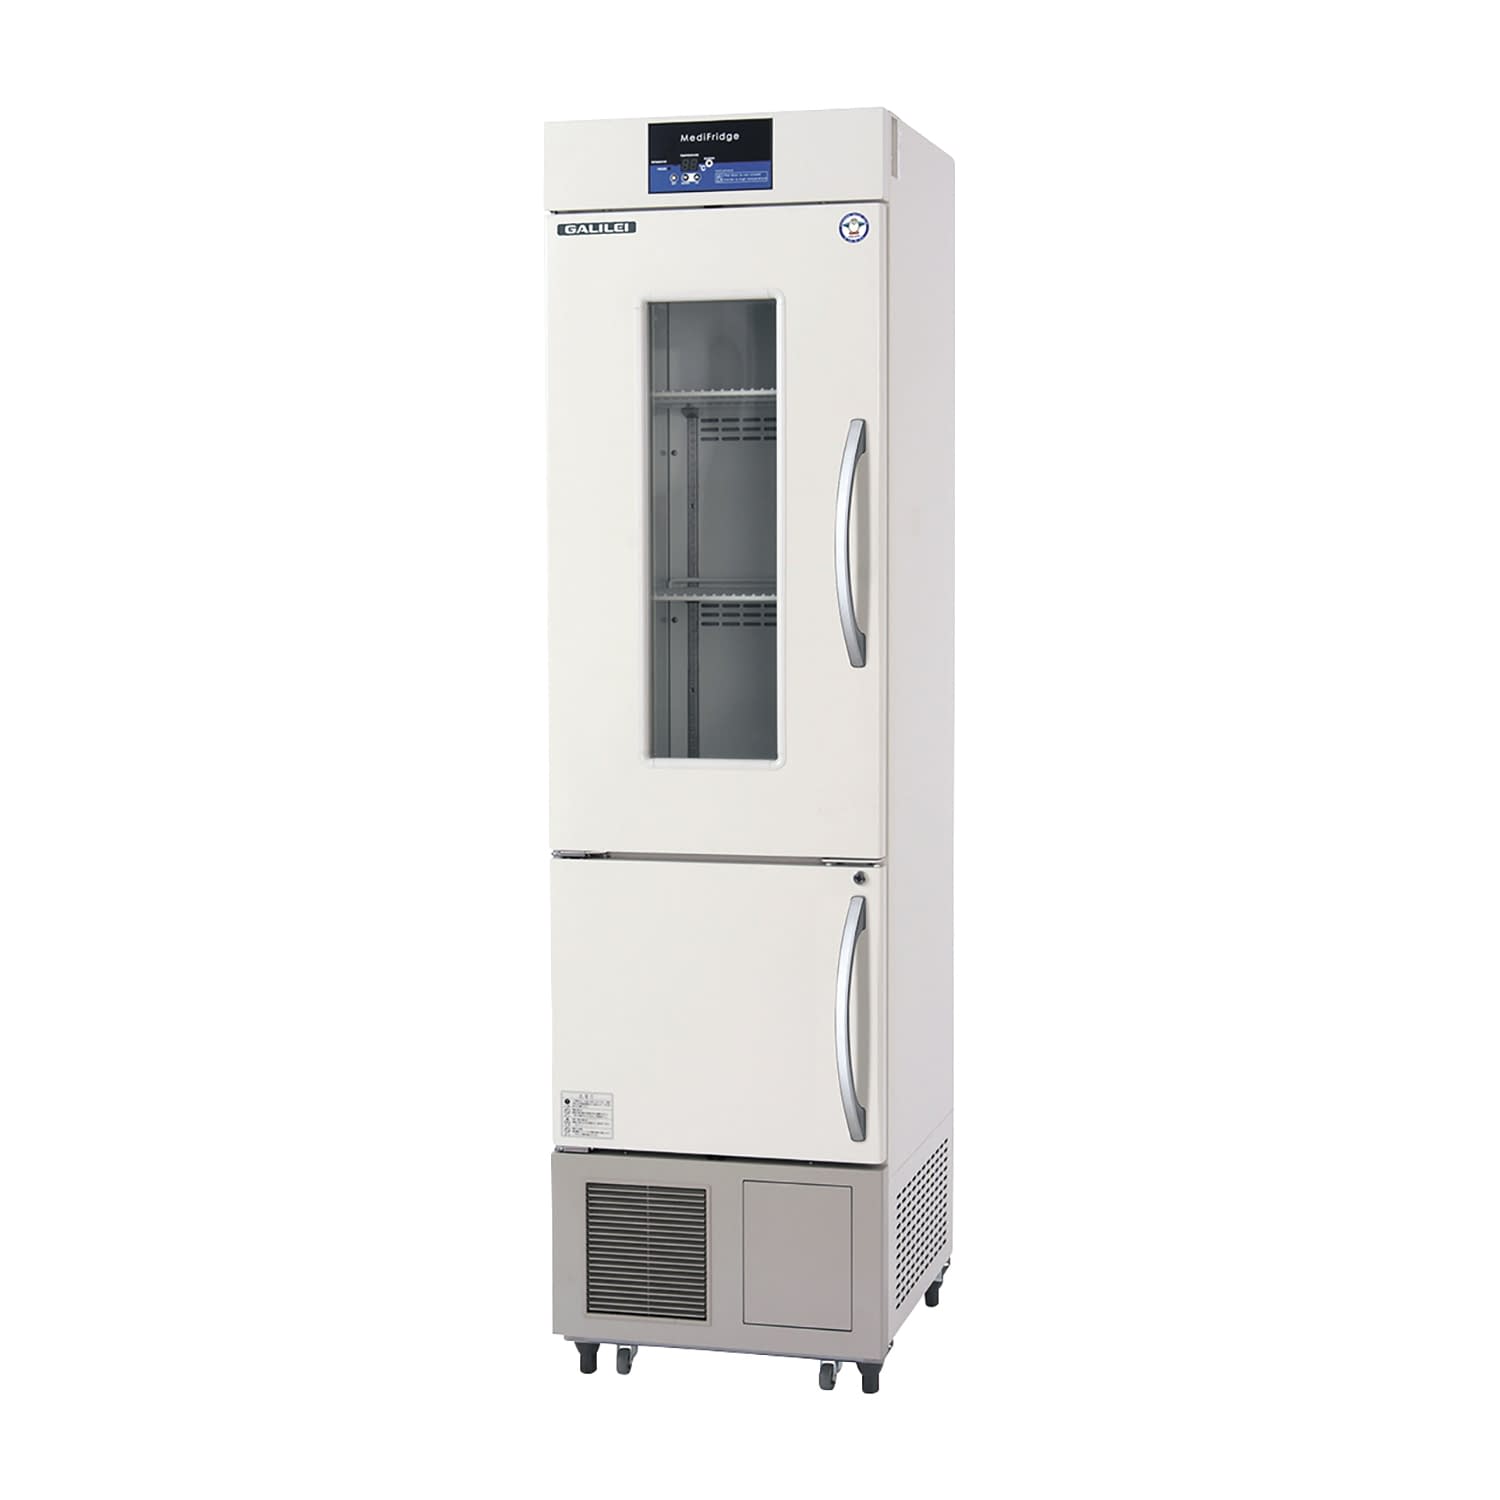 薬用冷凍冷蔵庫 FMS-F305GX(113／315L) 1台 フクシマガリレイ アイボリー(標準色) カラーイエロー25-5515-0105 保冷庫 検査室 薬用保冷庫